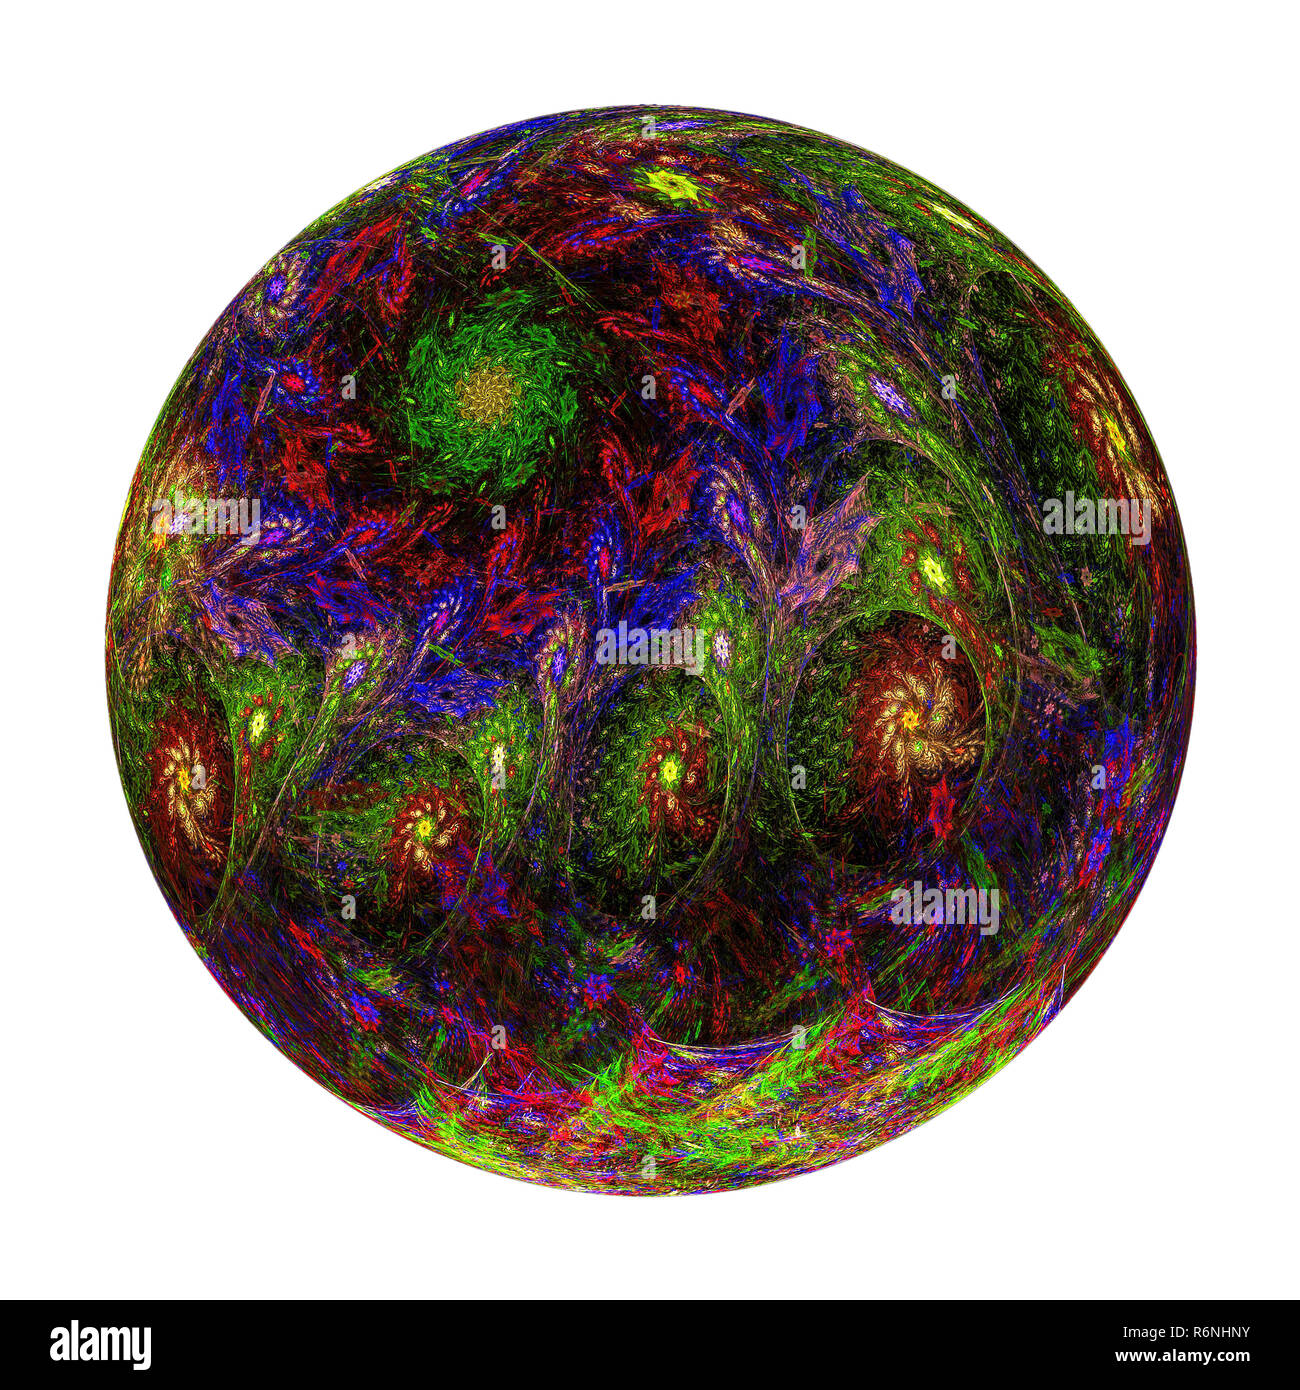 Abstract fractal balle avec pattern - image générée numériquement Banque D'Images